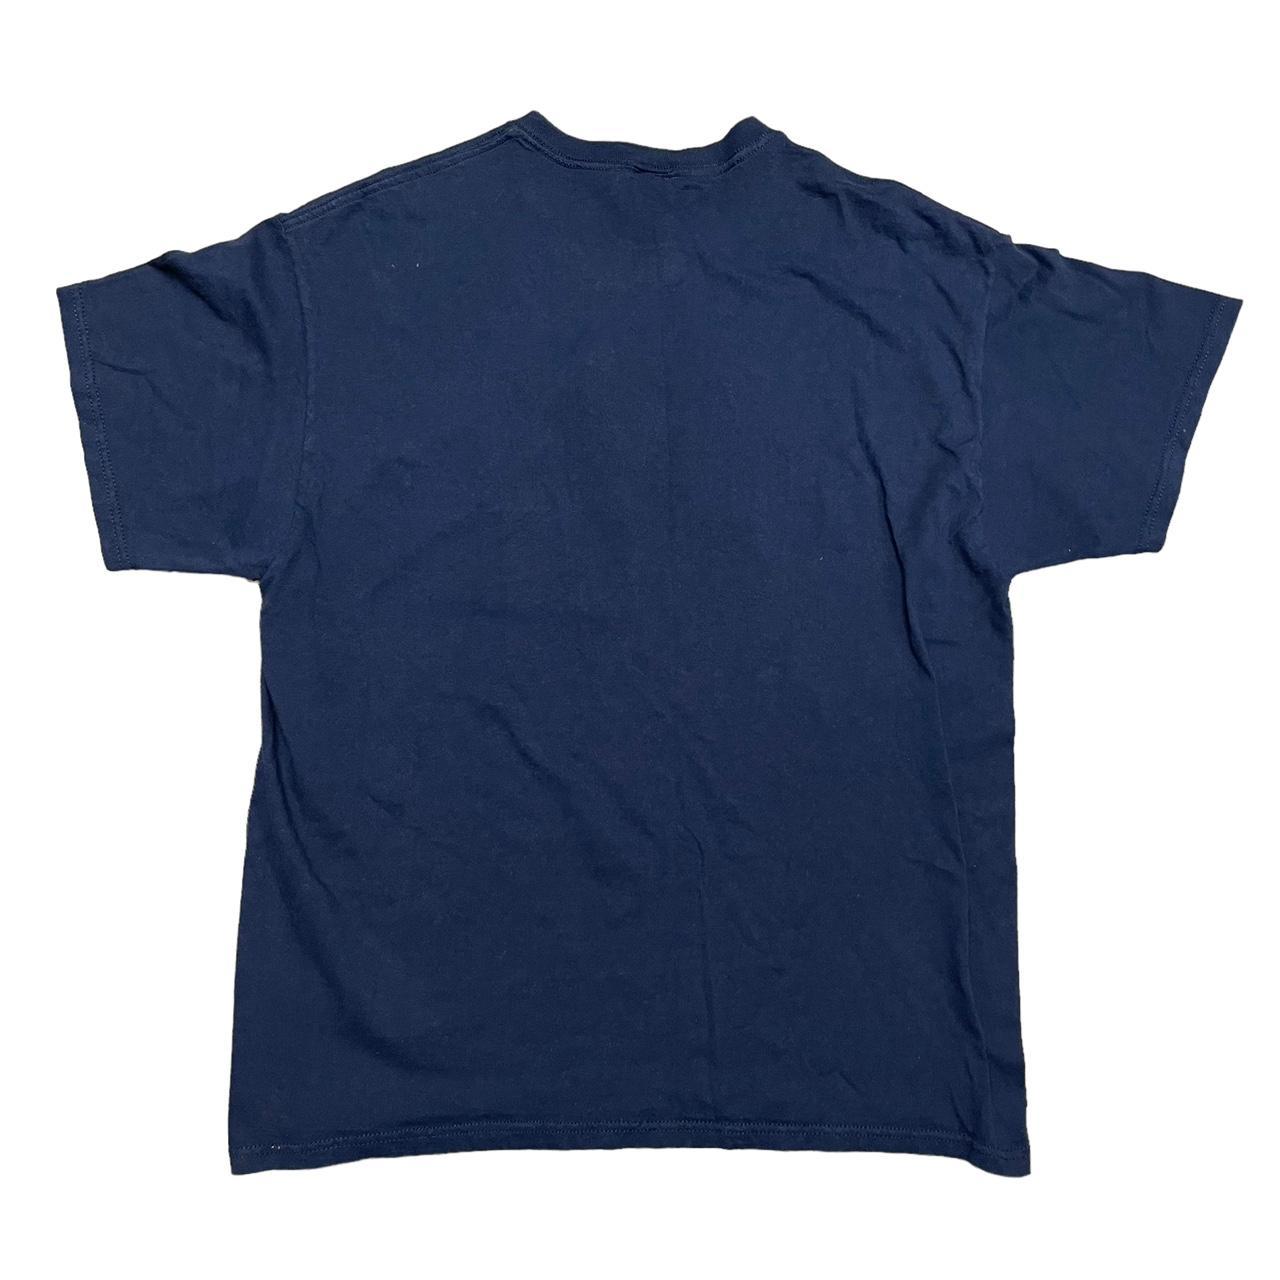 Vintage y2k Bud Light T-Shirt! TagSize:... - Depop